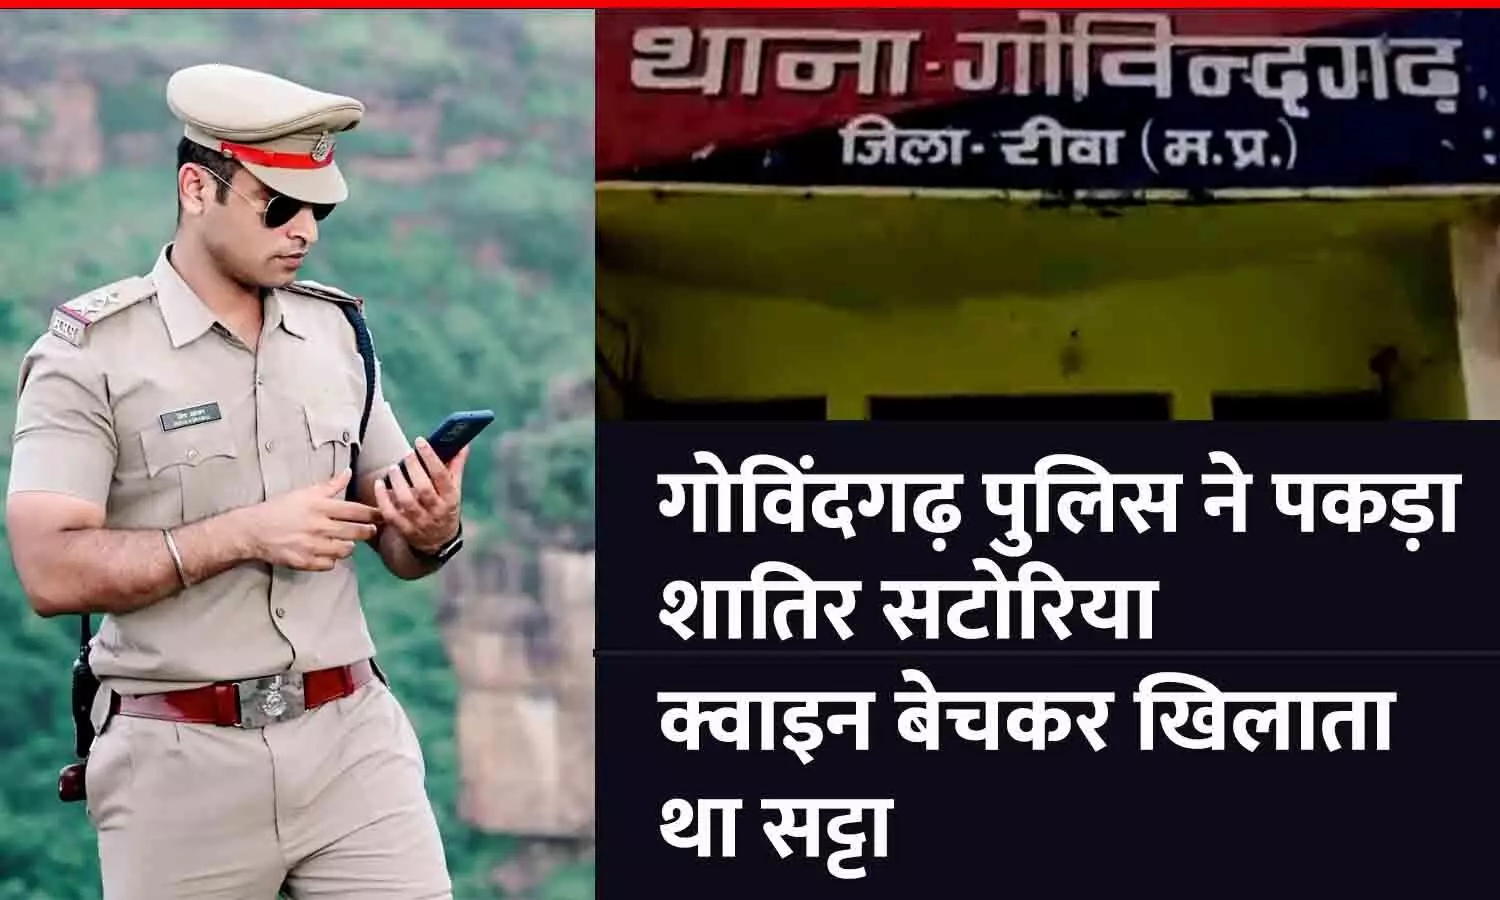 रीवा न्यूज: गोविंदगढ़ पुलिस ने पकड़ा शातिर सटोरिया, क्वाइन बेचकर खिलाता था सट्टा; खाते में मिले 50 लाख